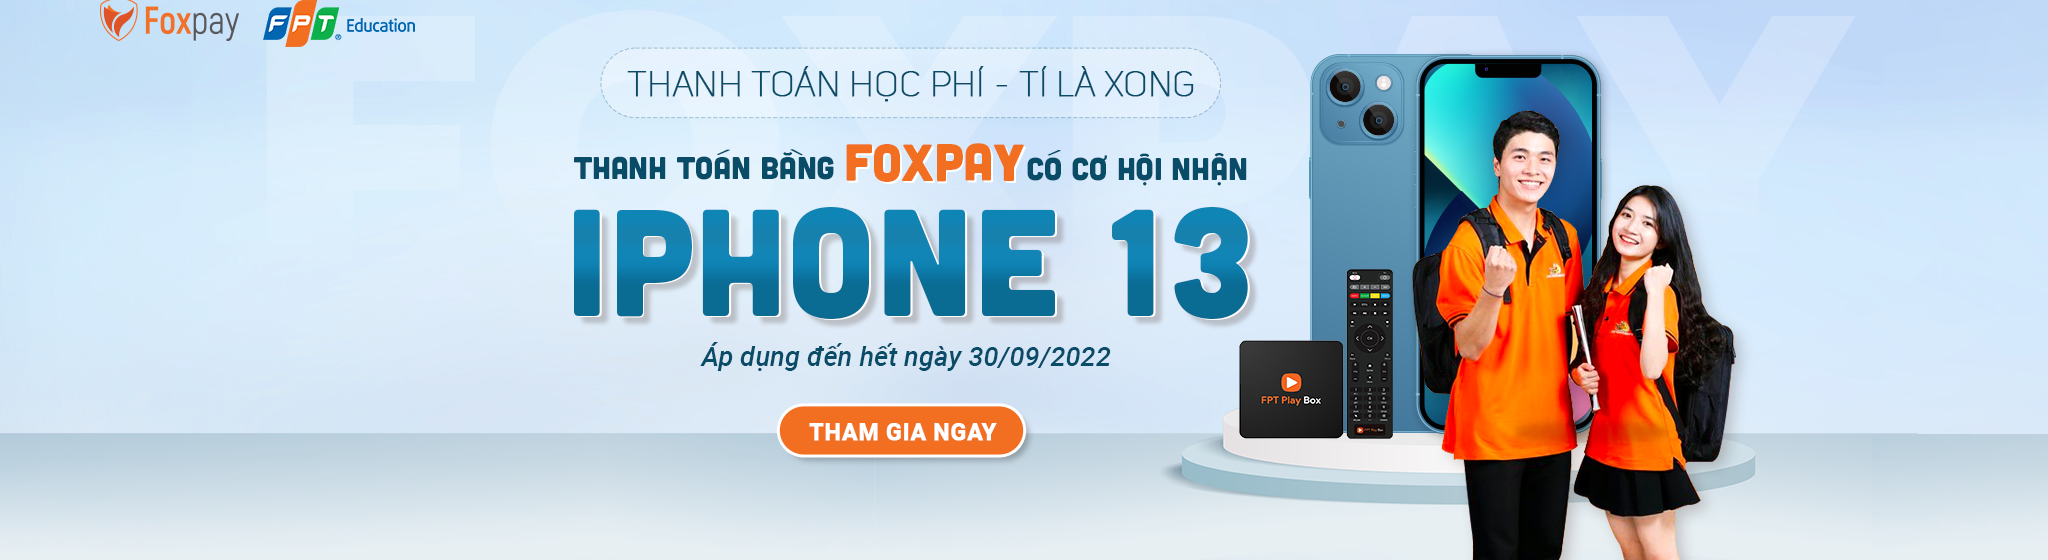 Foxpay Thang 8